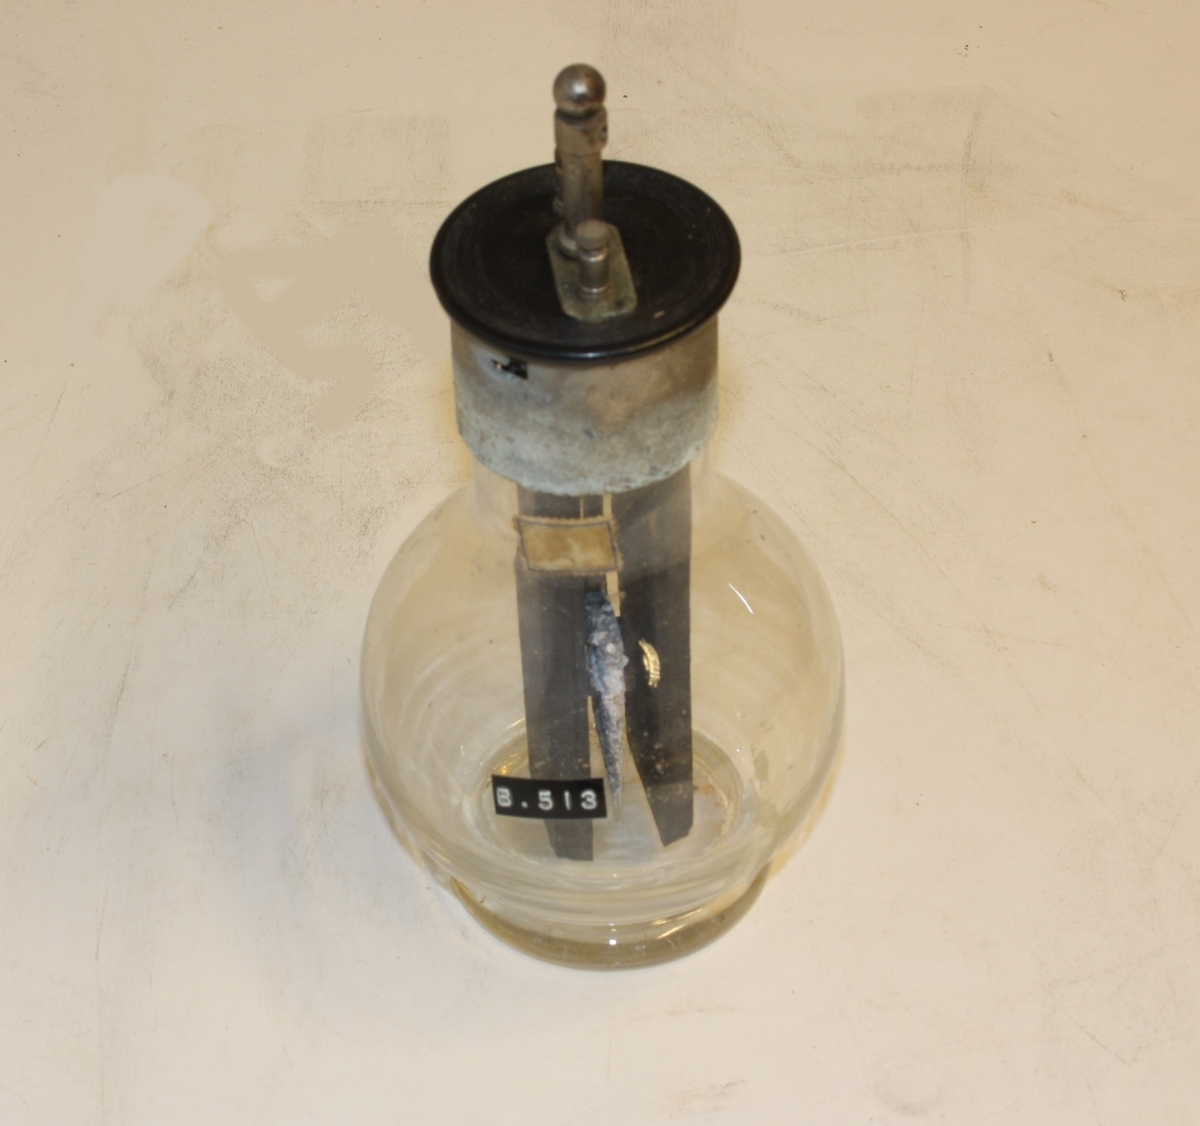 Kjegleforma kolbe/flaske med elektromagnet og tilkobling for strøm. Dette var nytta til å demonstrera korleis eit batteri virka.